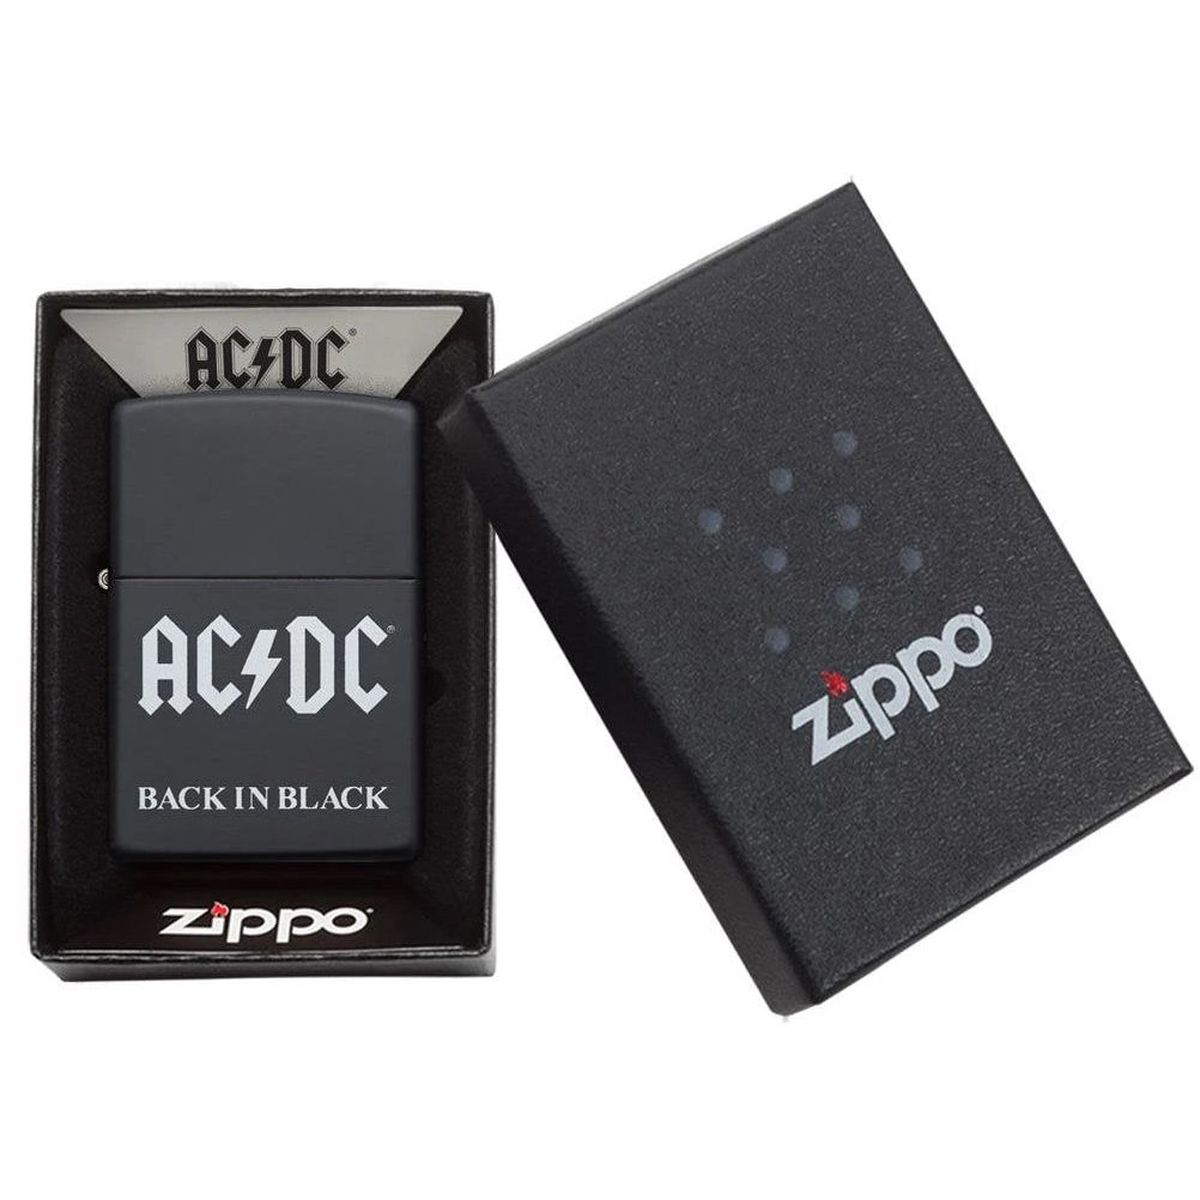 Back in Black ACDC Zippo Lighter